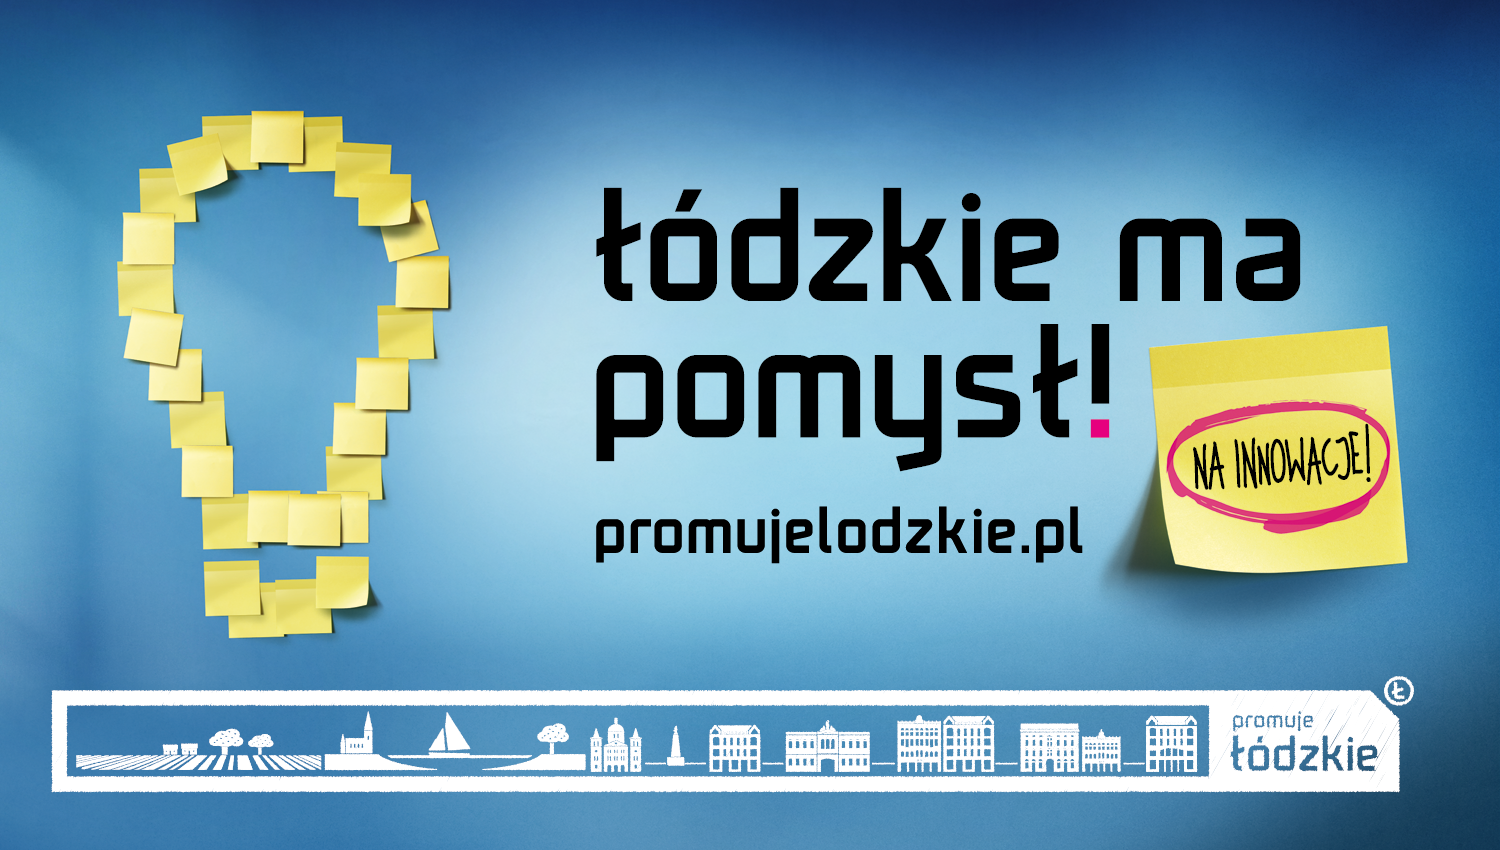 Eskadra - Łódzkie has an idea! - The Marshal Office of the Lodzkie Region